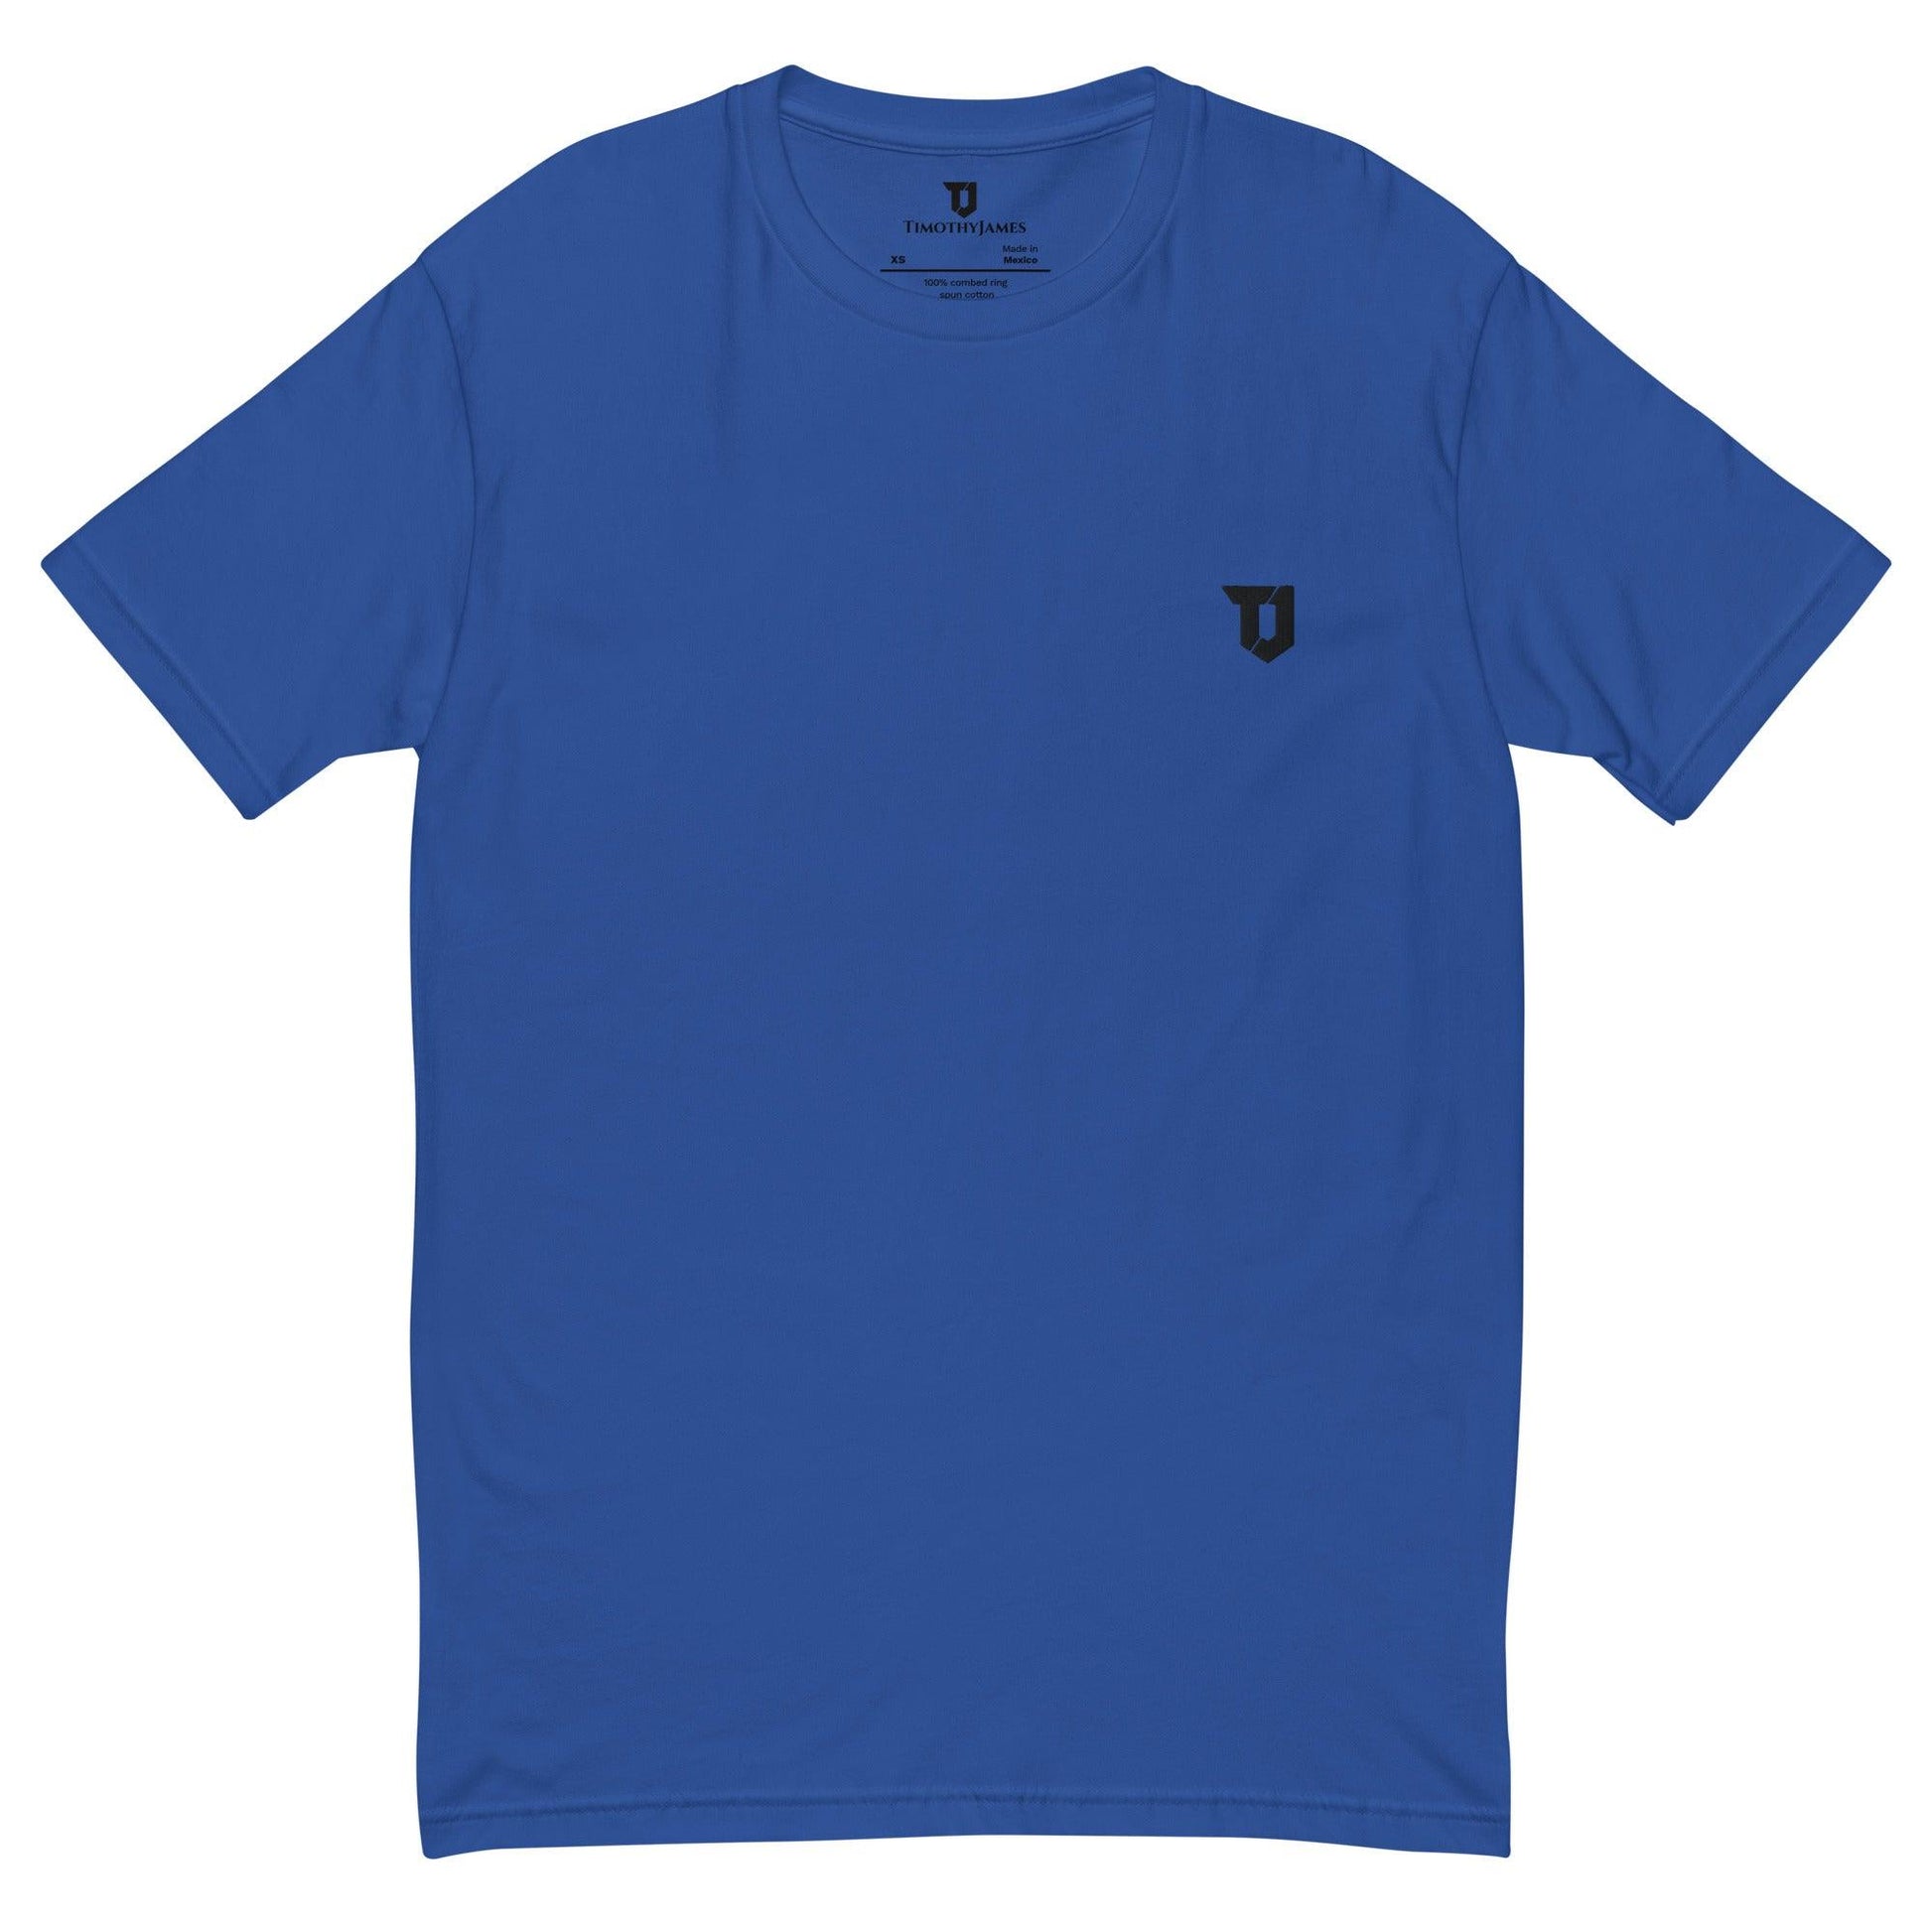 TimothyJames Core T-Shirt Royal Blue - TimothyJames